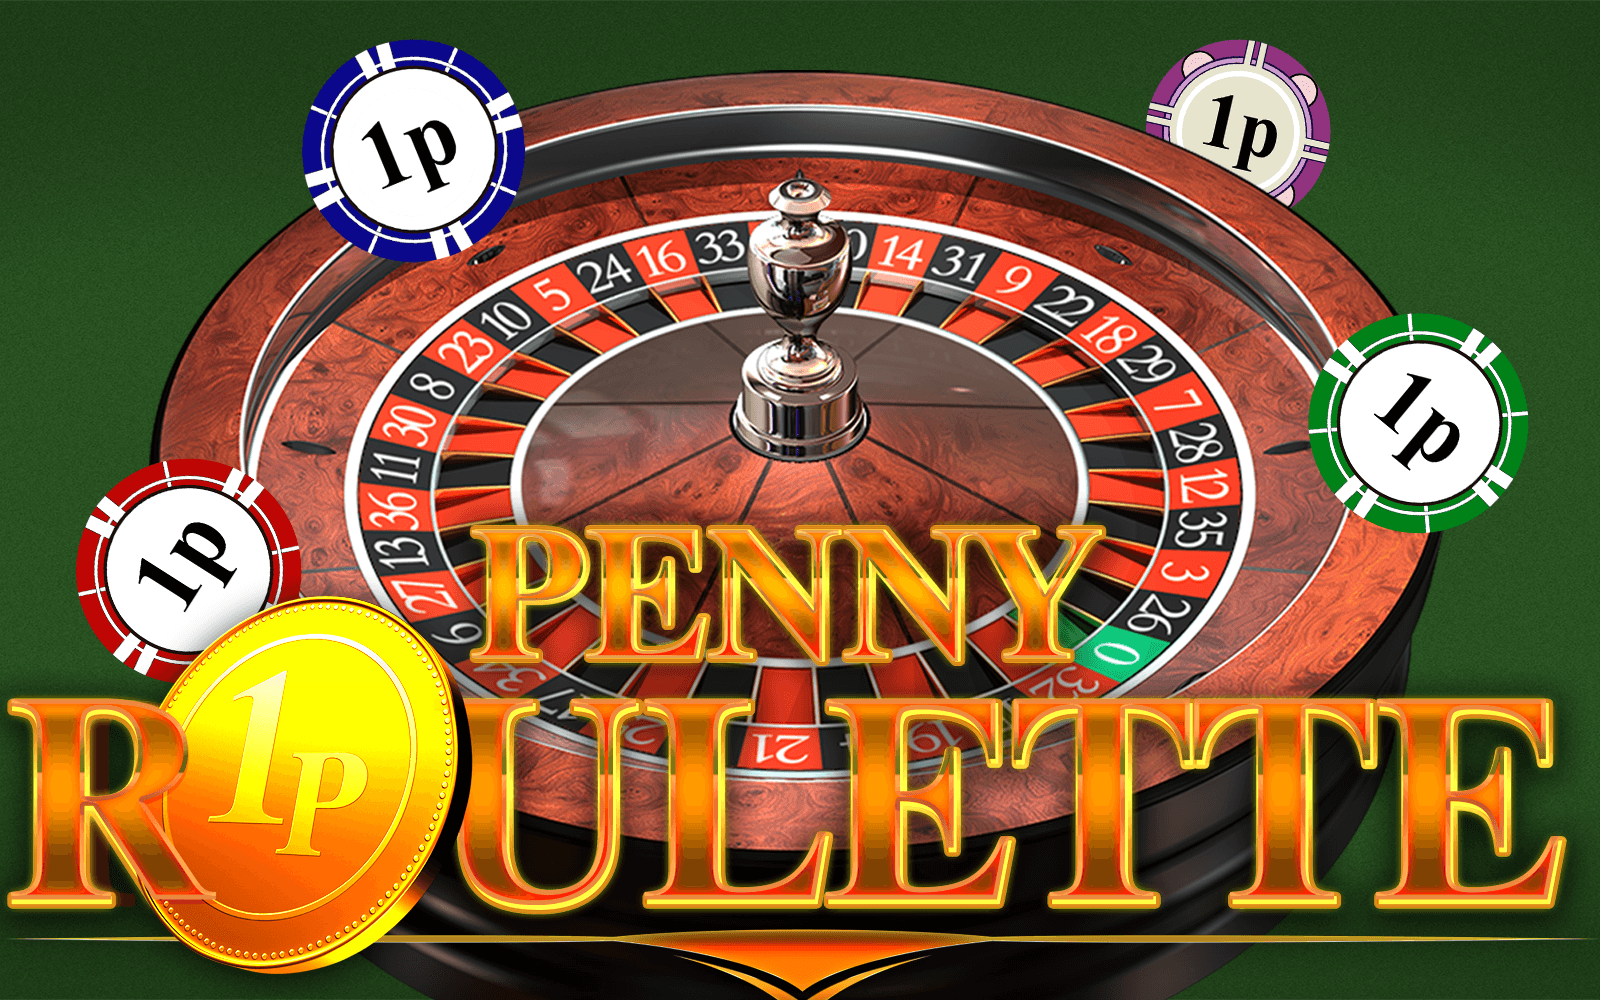 Gioca a Penny Roulette sul casino online Starcasino.be